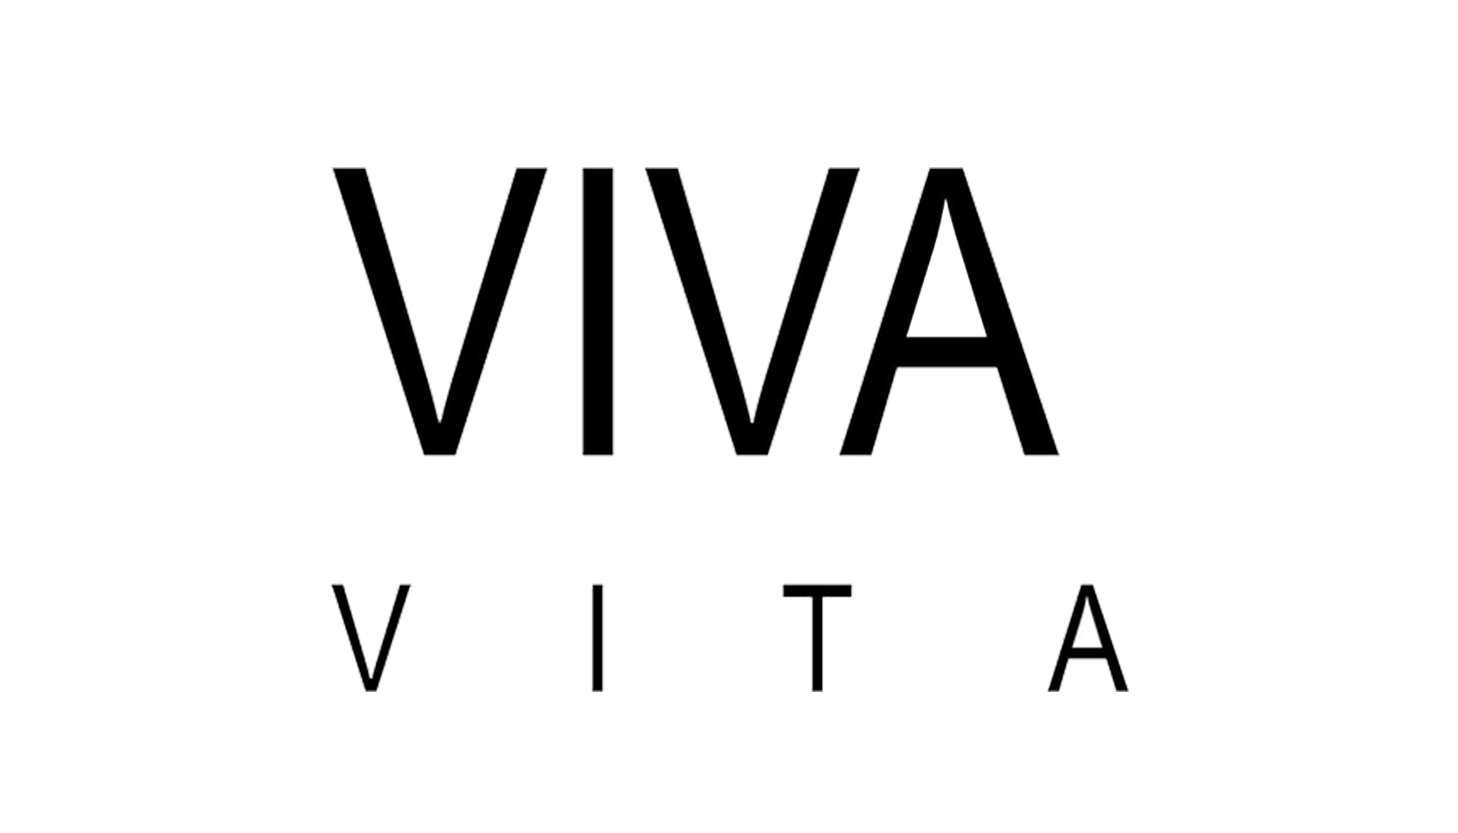 Viva Vita